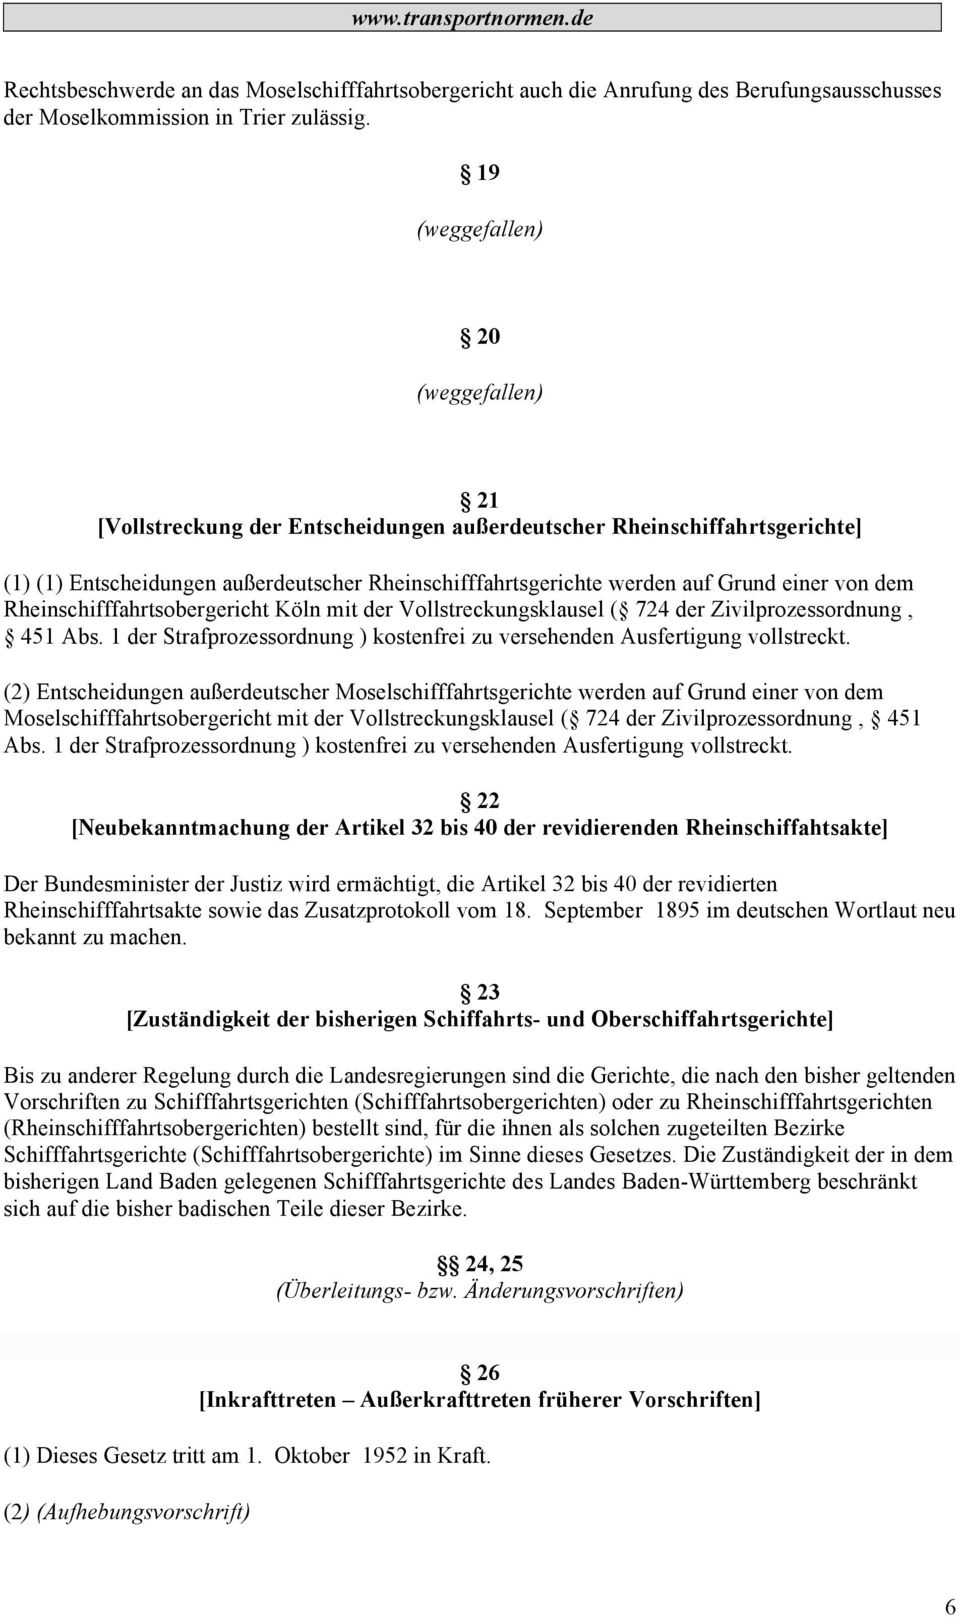 von dem Rheinschifffahrtsobergericht Köln mit der Vollstreckungsklausel ( 724 der Zivilprozessordnung, 451 Abs. 1 der Strafprozessordnung ) kostenfrei zu versehenden Ausfertigung vollstreckt.